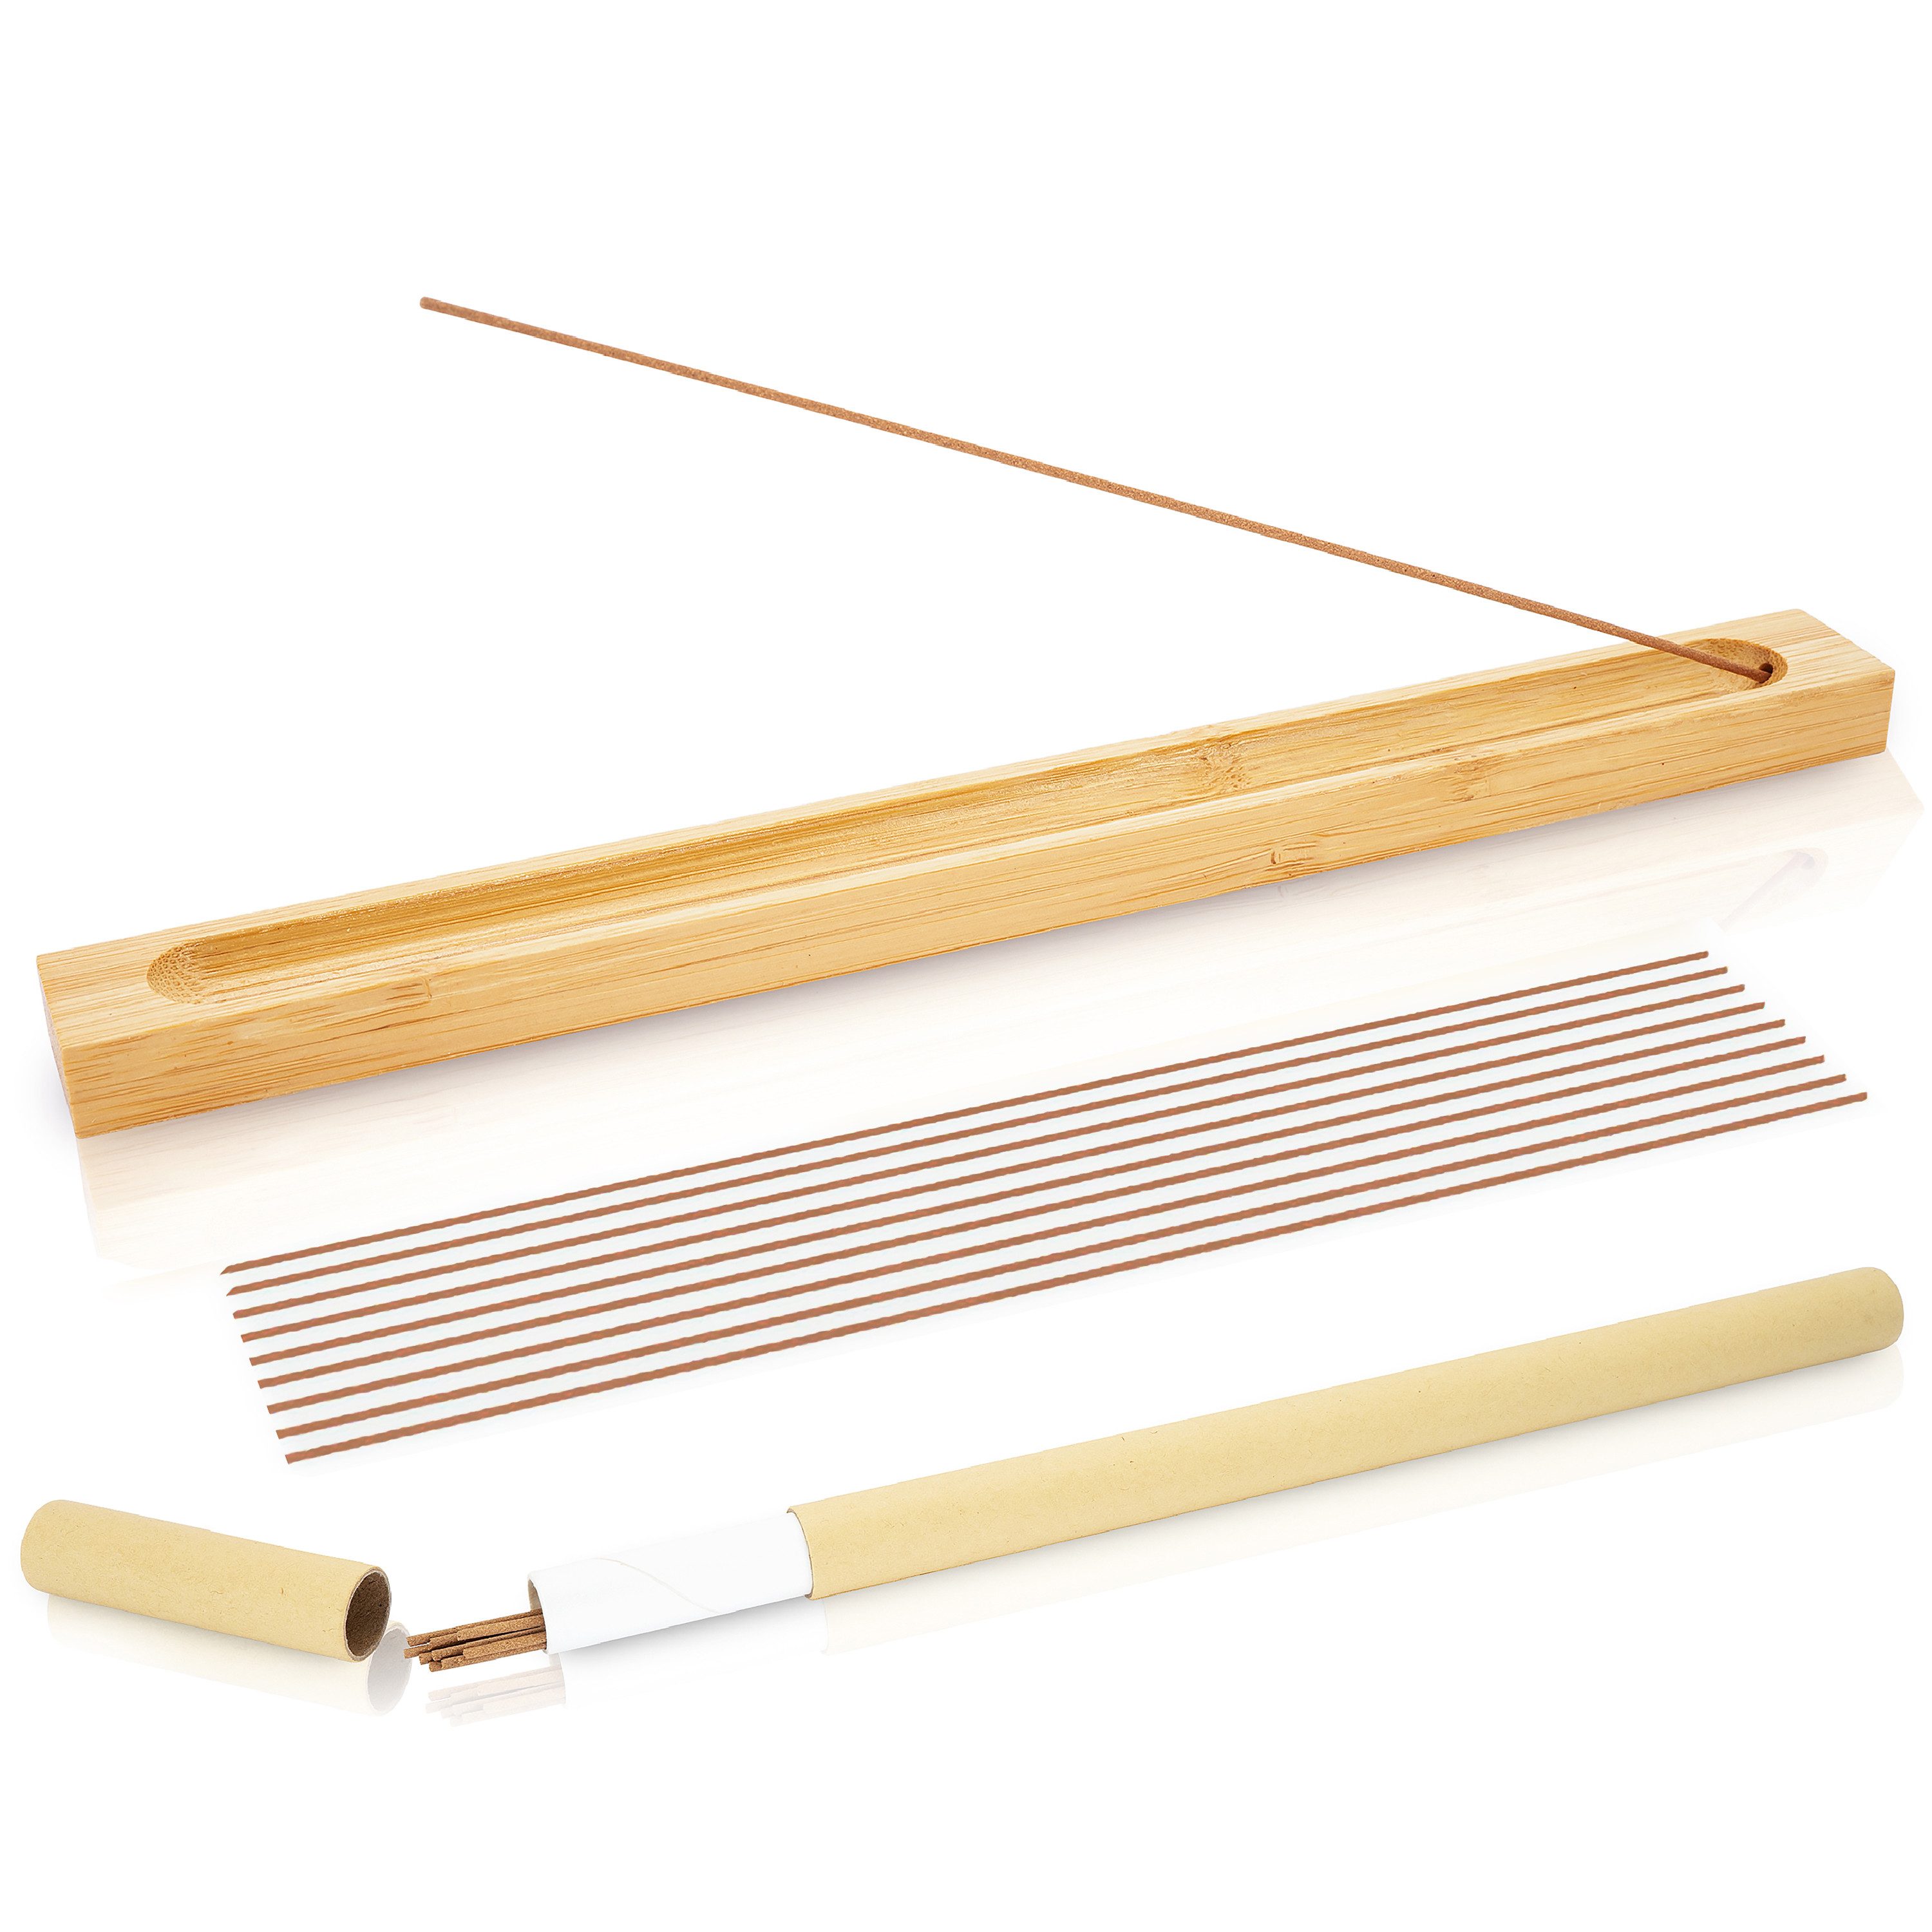 GOOD THINGS Räucherstäbchen-Halter Set aus Bambus mit 10 Sandelholz Duft Räucherstäbchen, Räucherstäbchenhalter Set Ideal für Meditation, Yoga, Deko